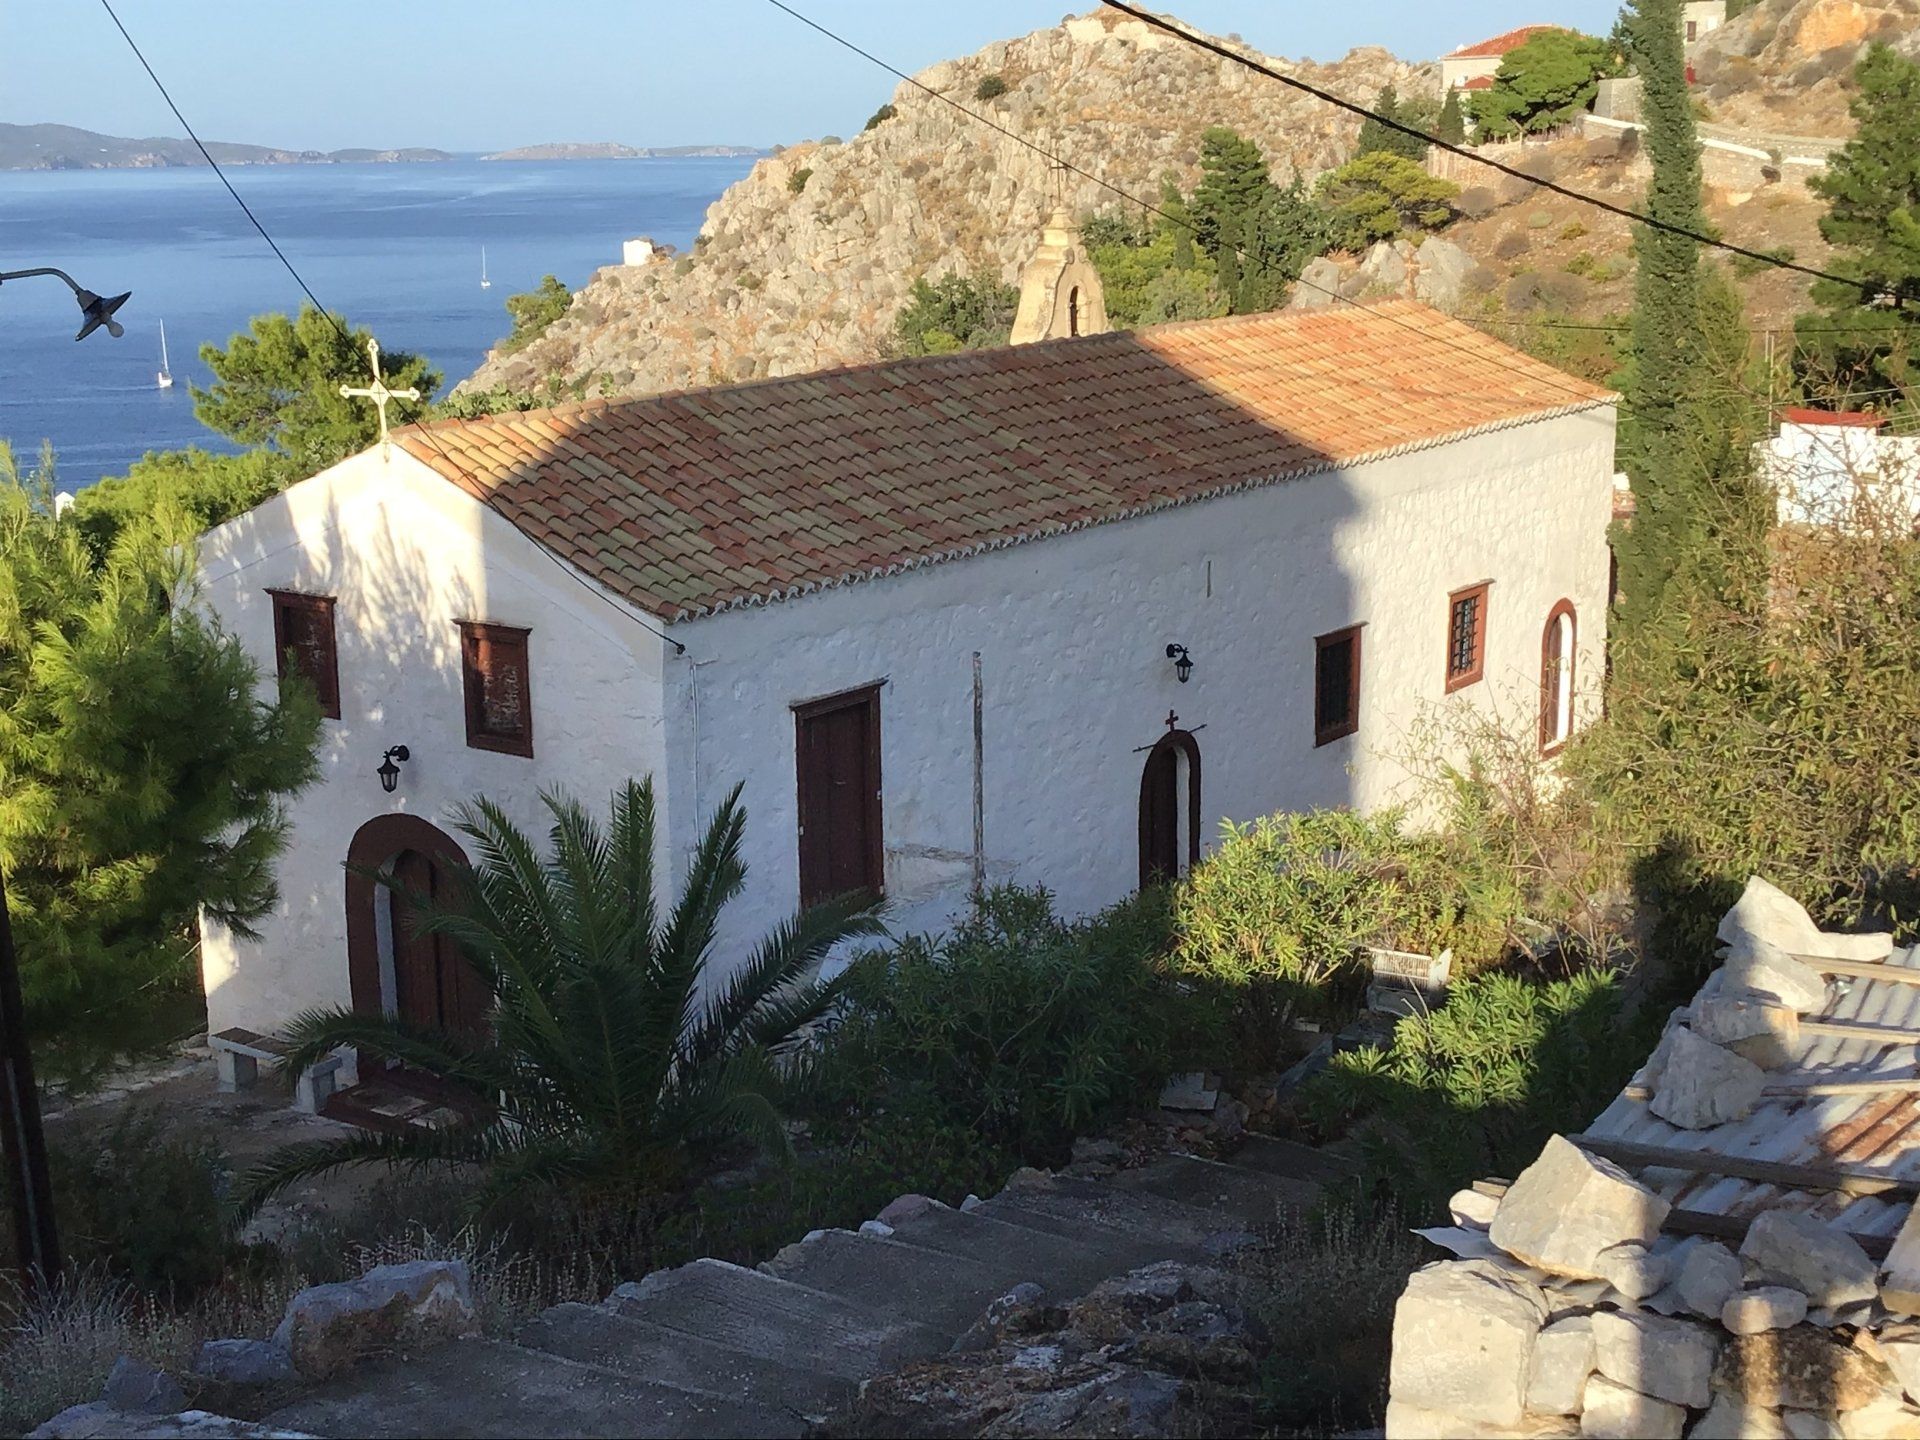 Aghios Antonios Church in Avlaki on Hydra Island Greece.